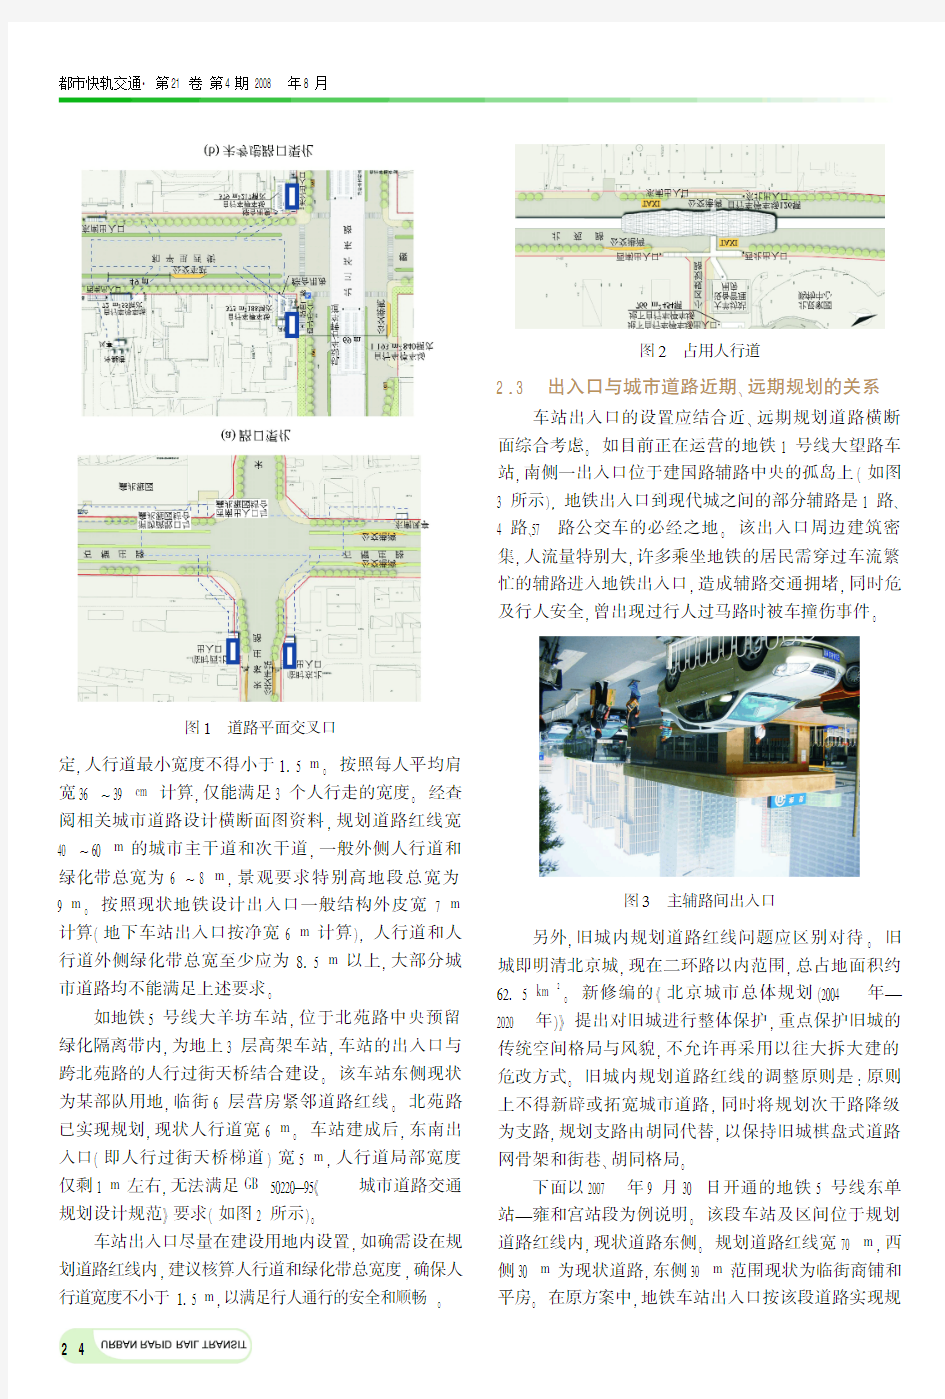 北京地铁车站附属建筑的设置